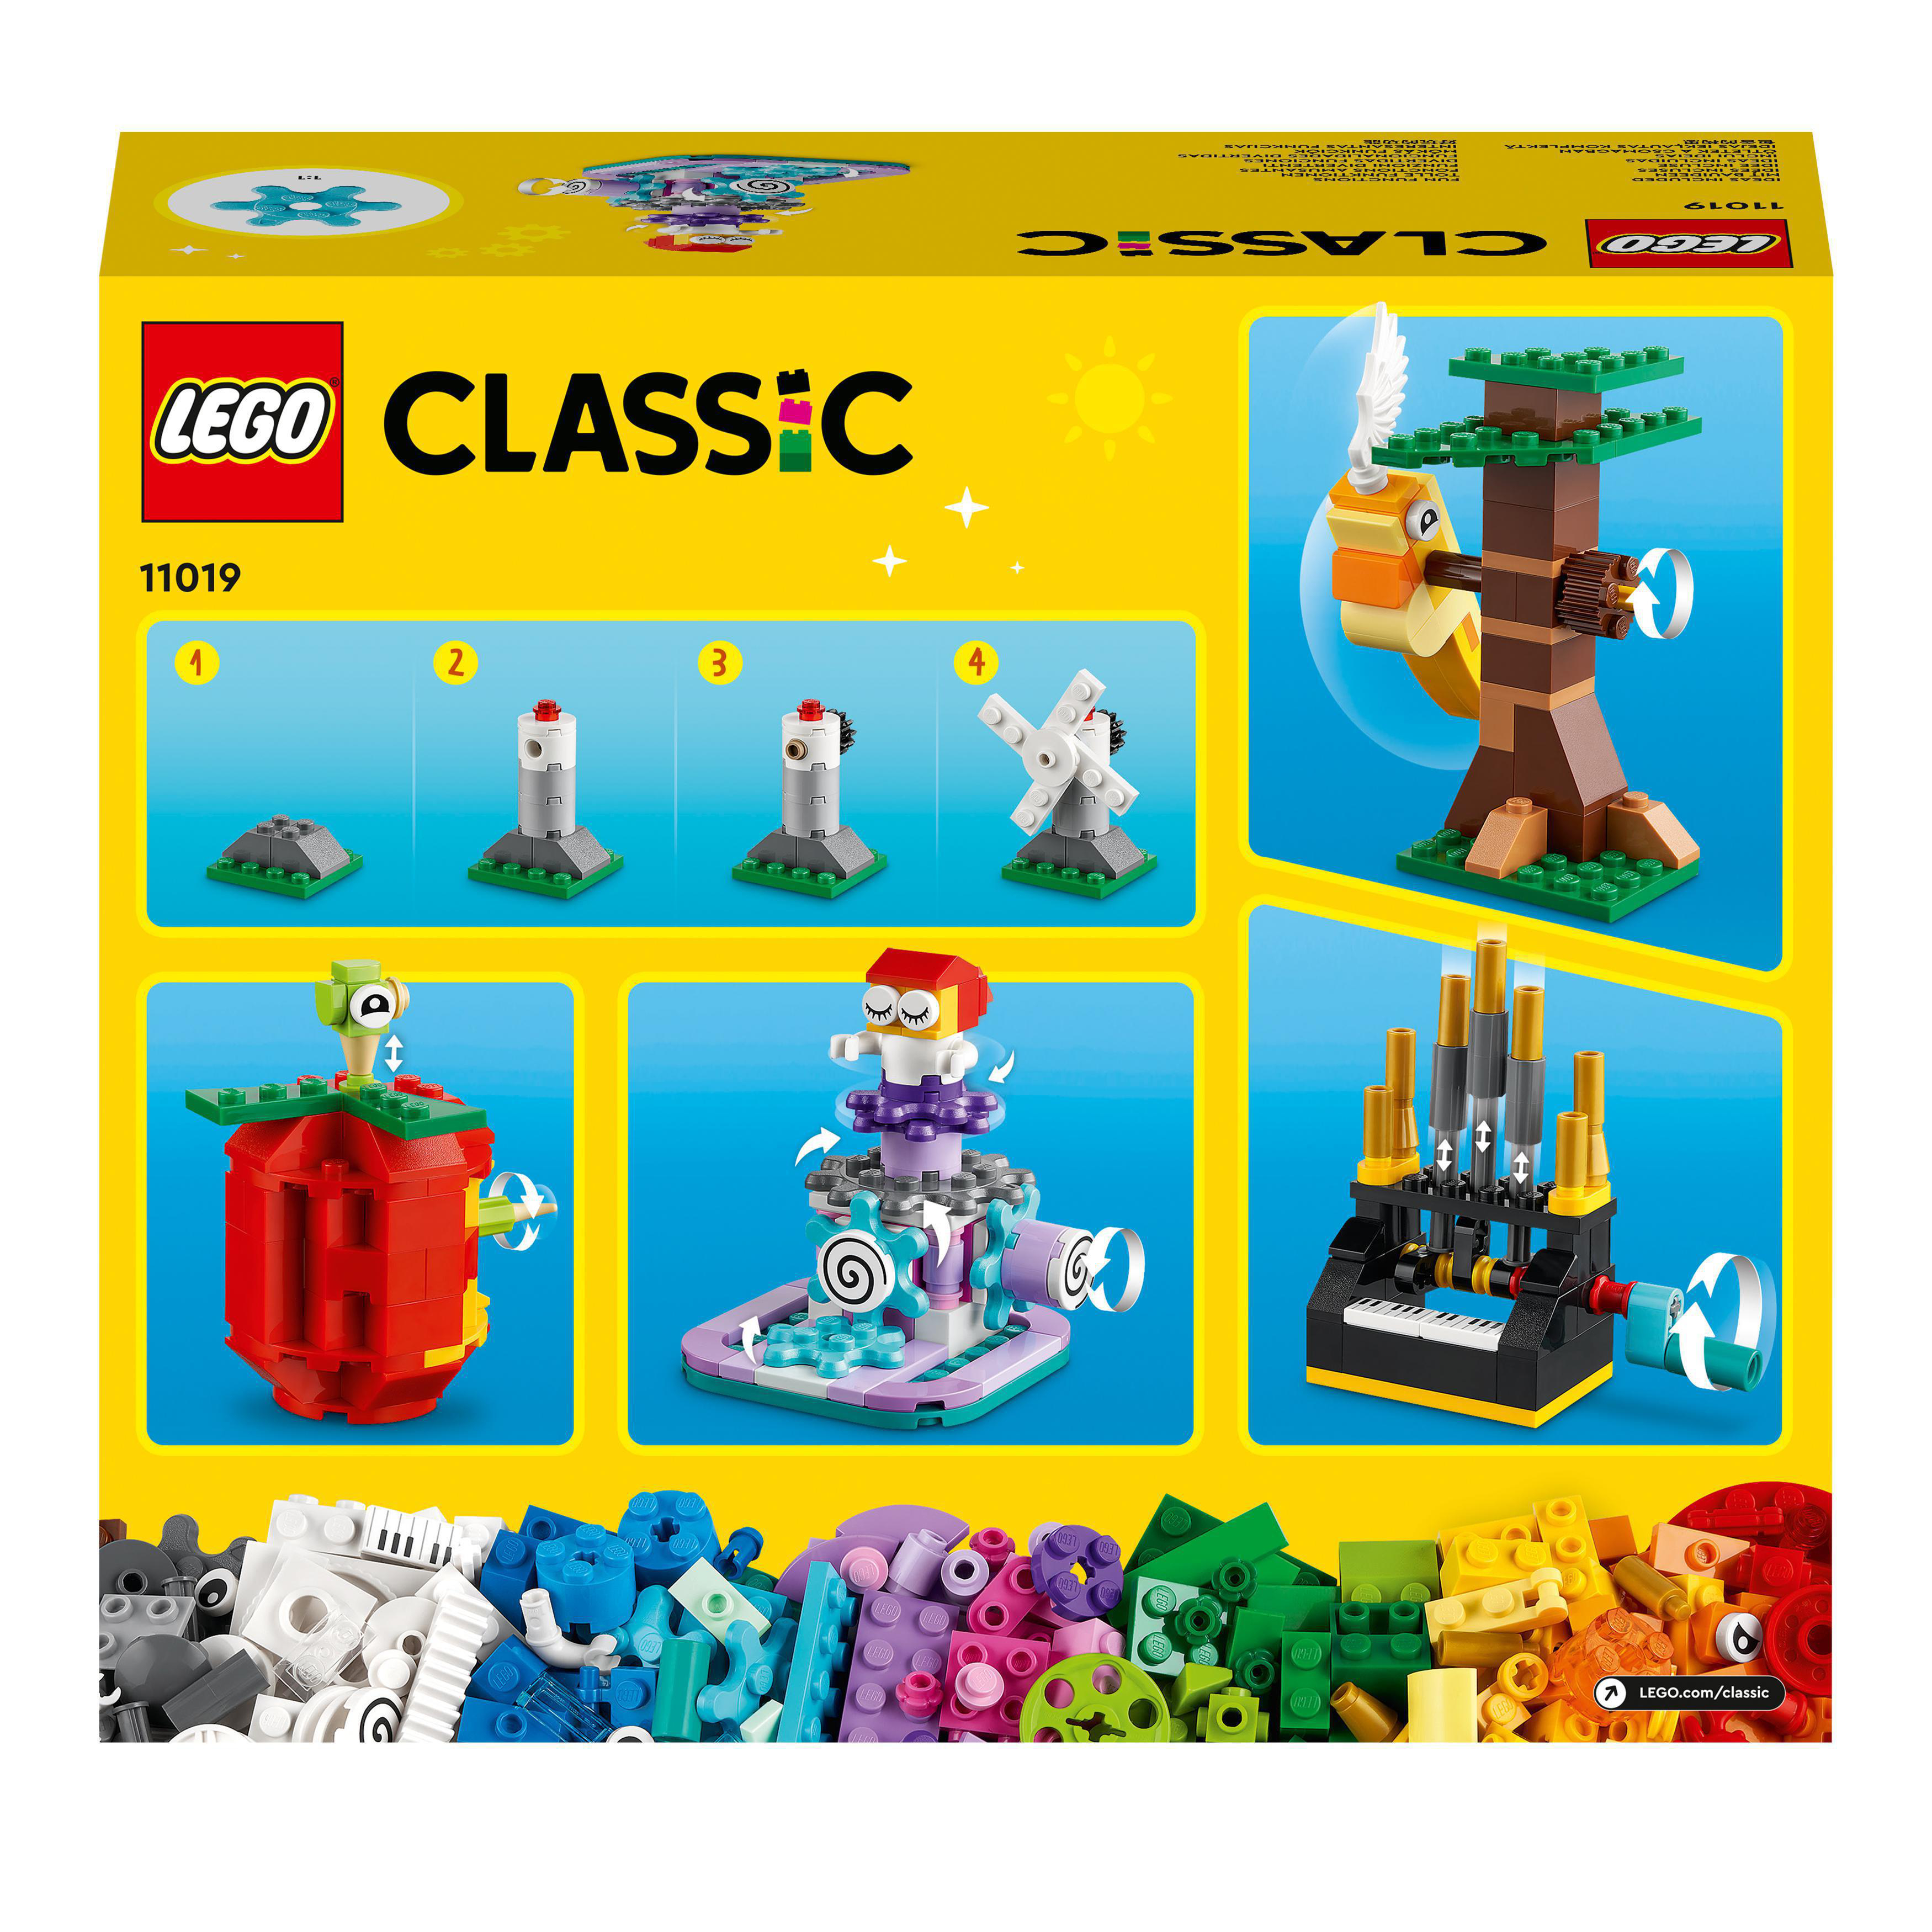 und Funktionen 11019 Classic LEGO Bausatz, Bausteine Mehrfarbig